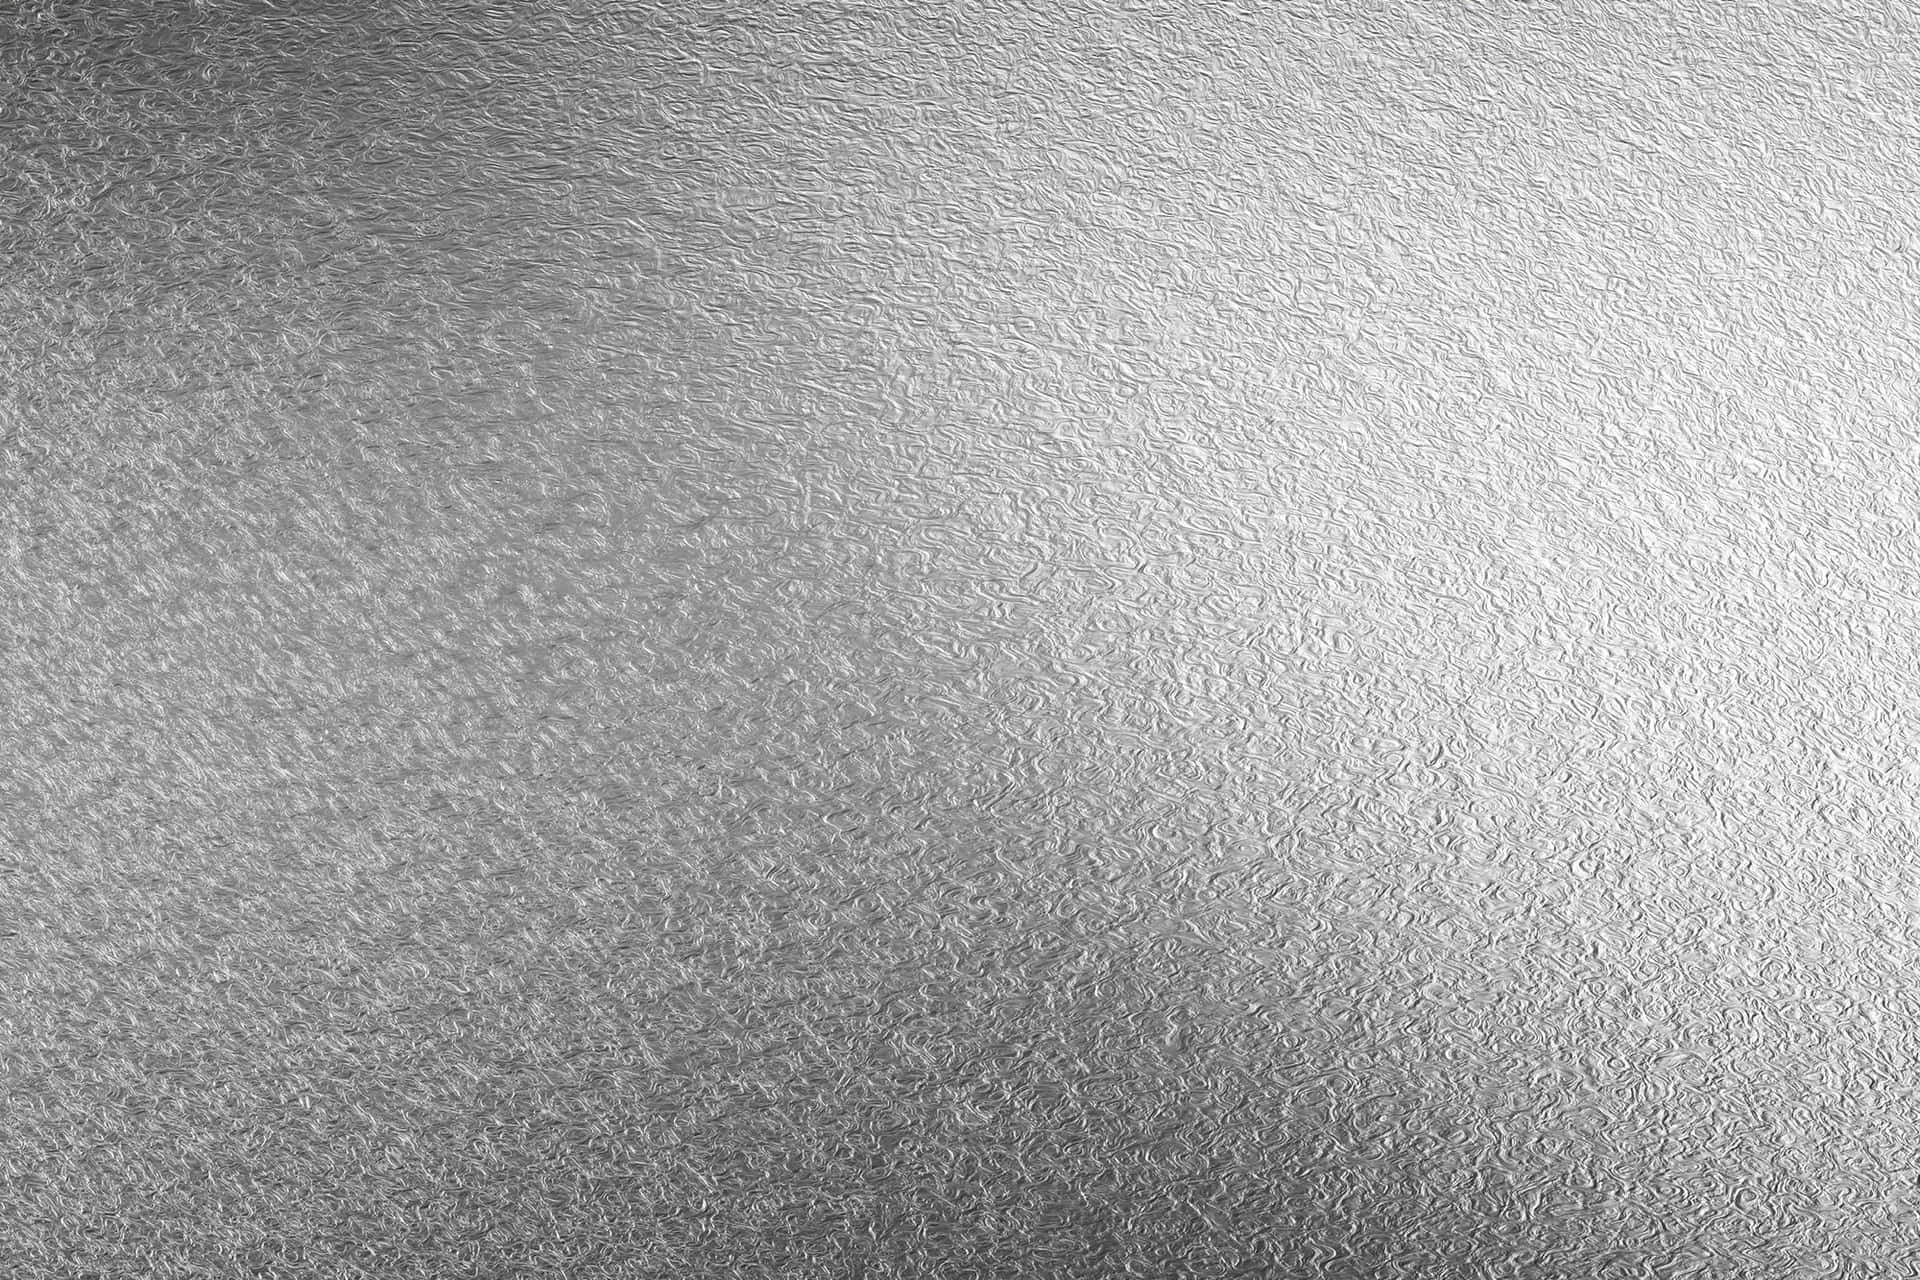 Glistening Silver Foil Textured Background